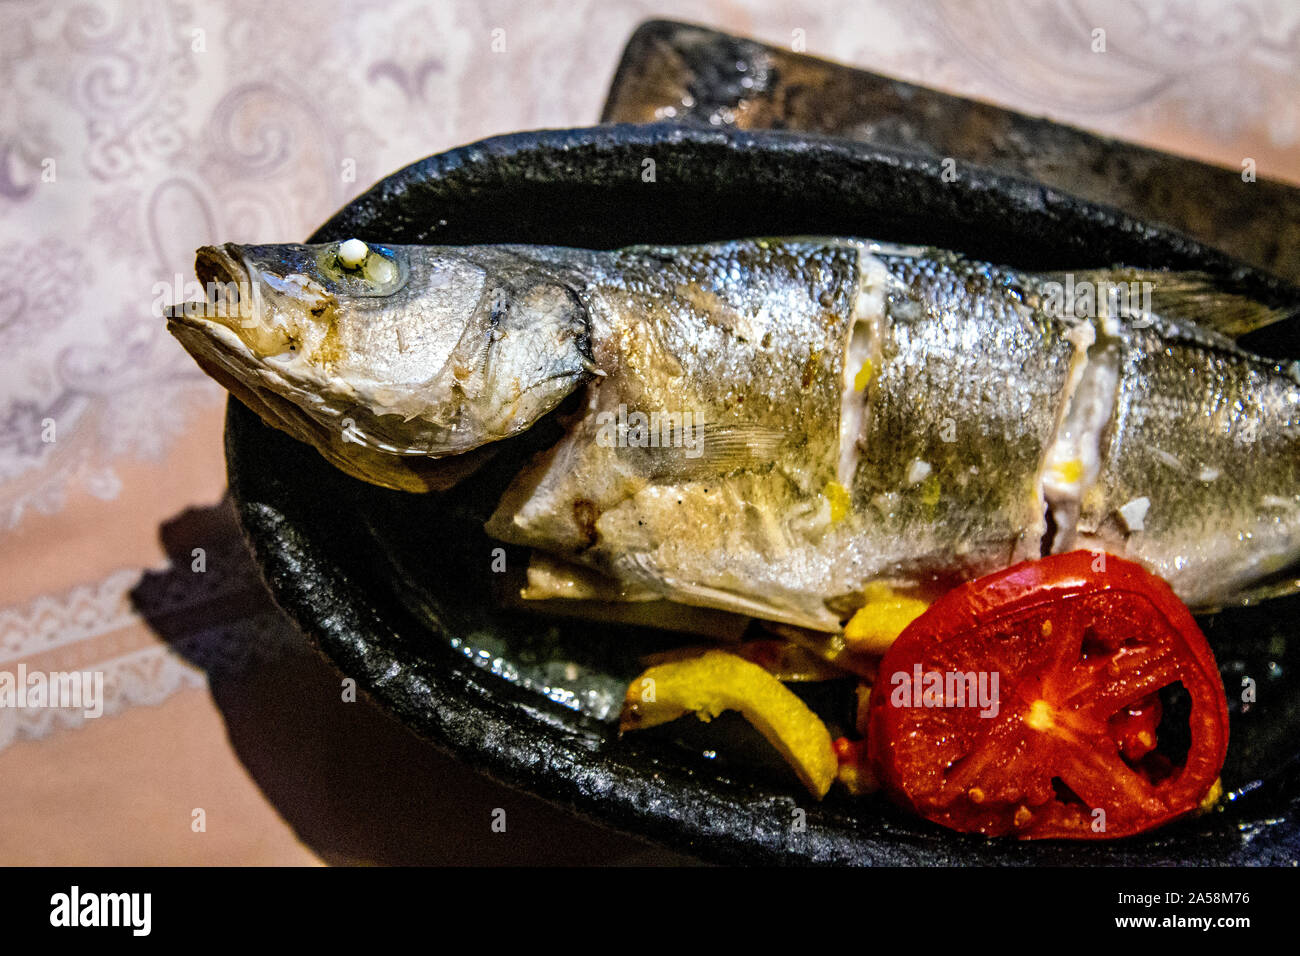 Whole grilled sea bass dish at Karacaören Restaurant in the Karacaören Bay, Turkish Riviera, Turkey Stock Photo